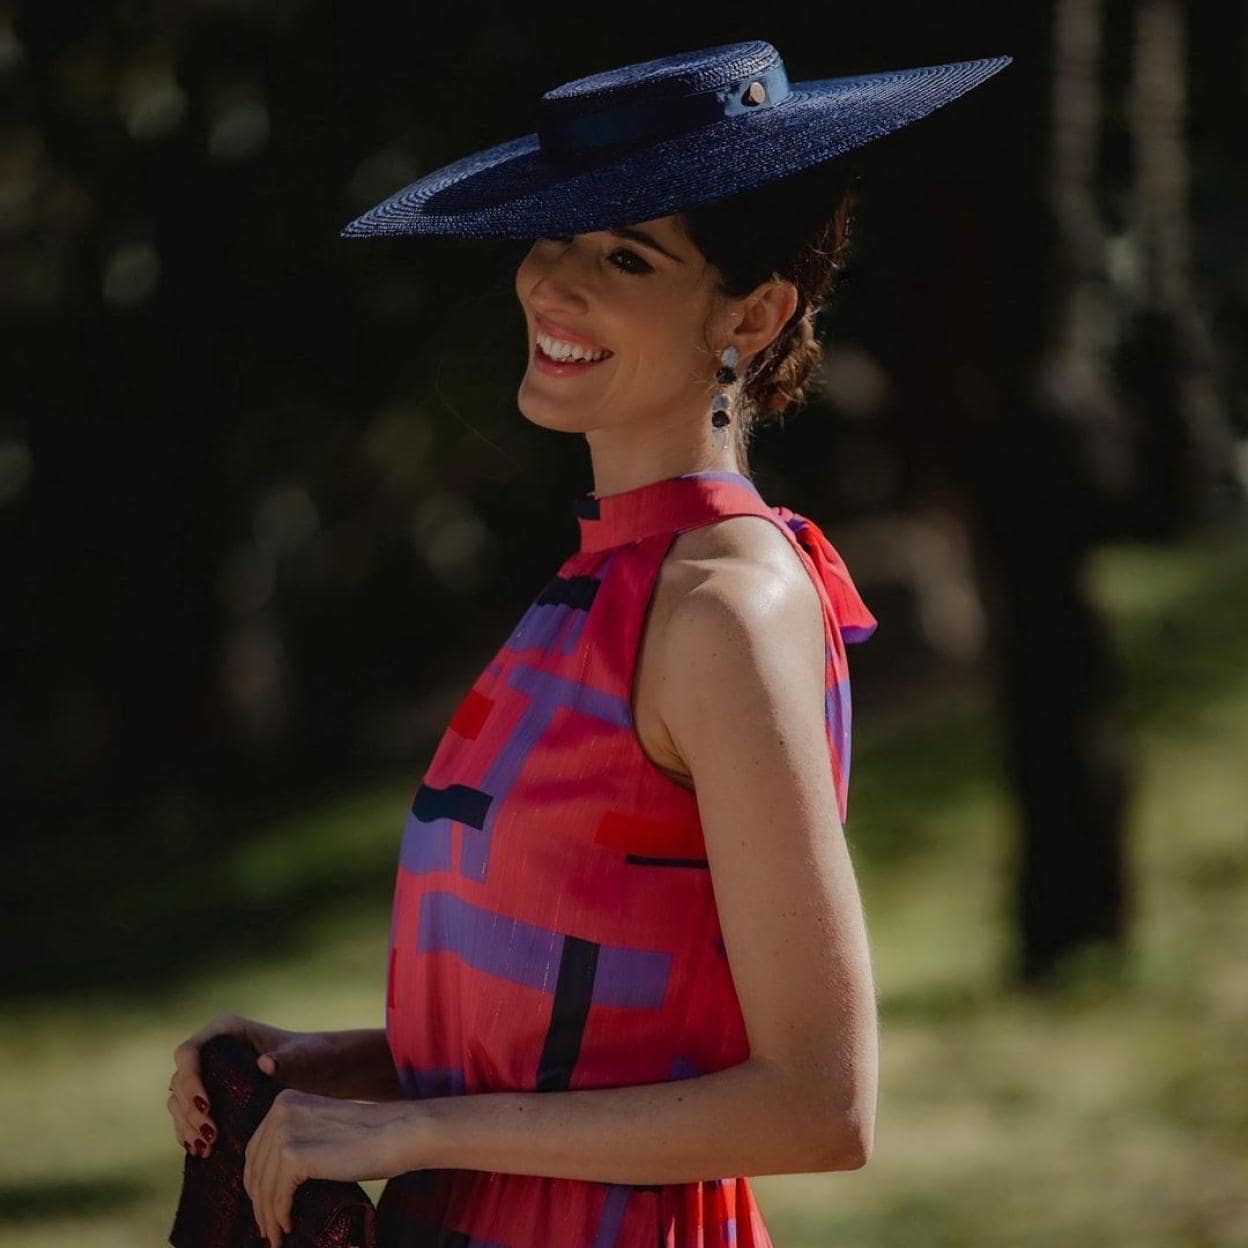 moda: Los mejores vestidos con halter de El Corte Inglés para las invitadas de verano | Mujer Hoy